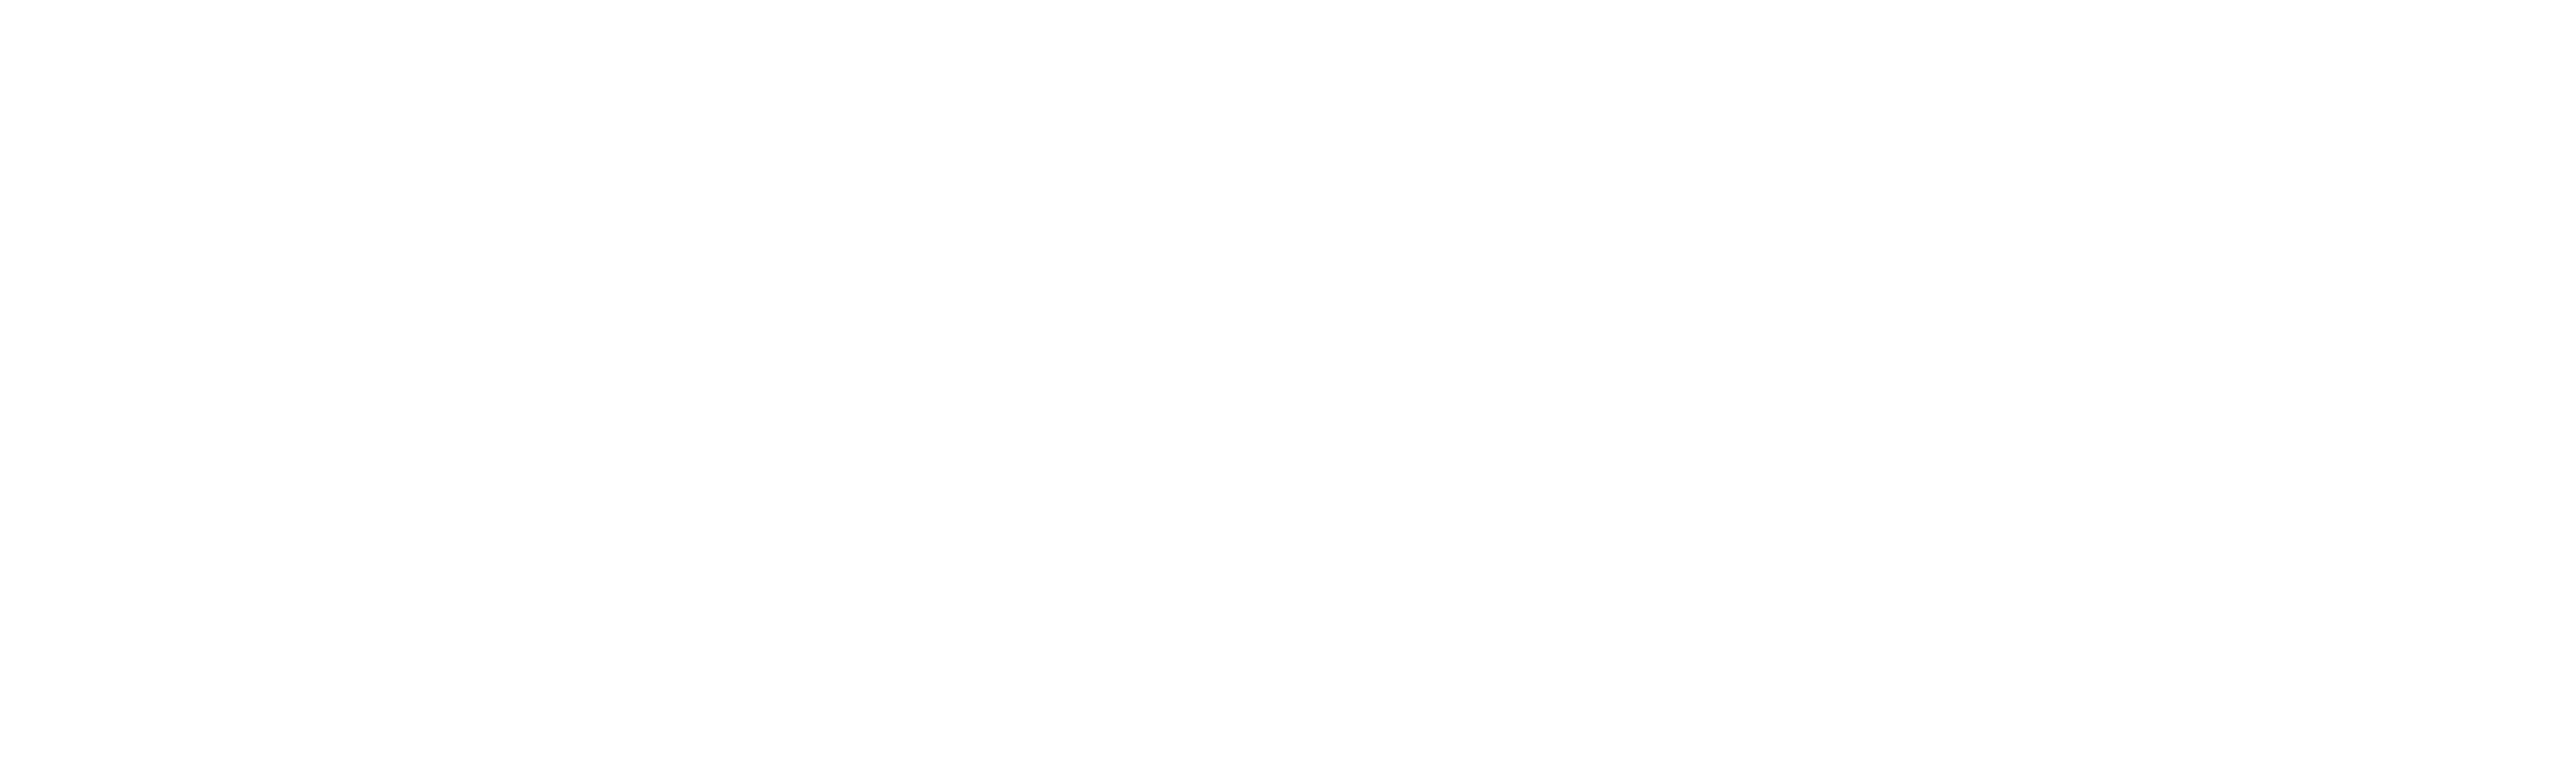 天晴設計https://afteraindesign.com/